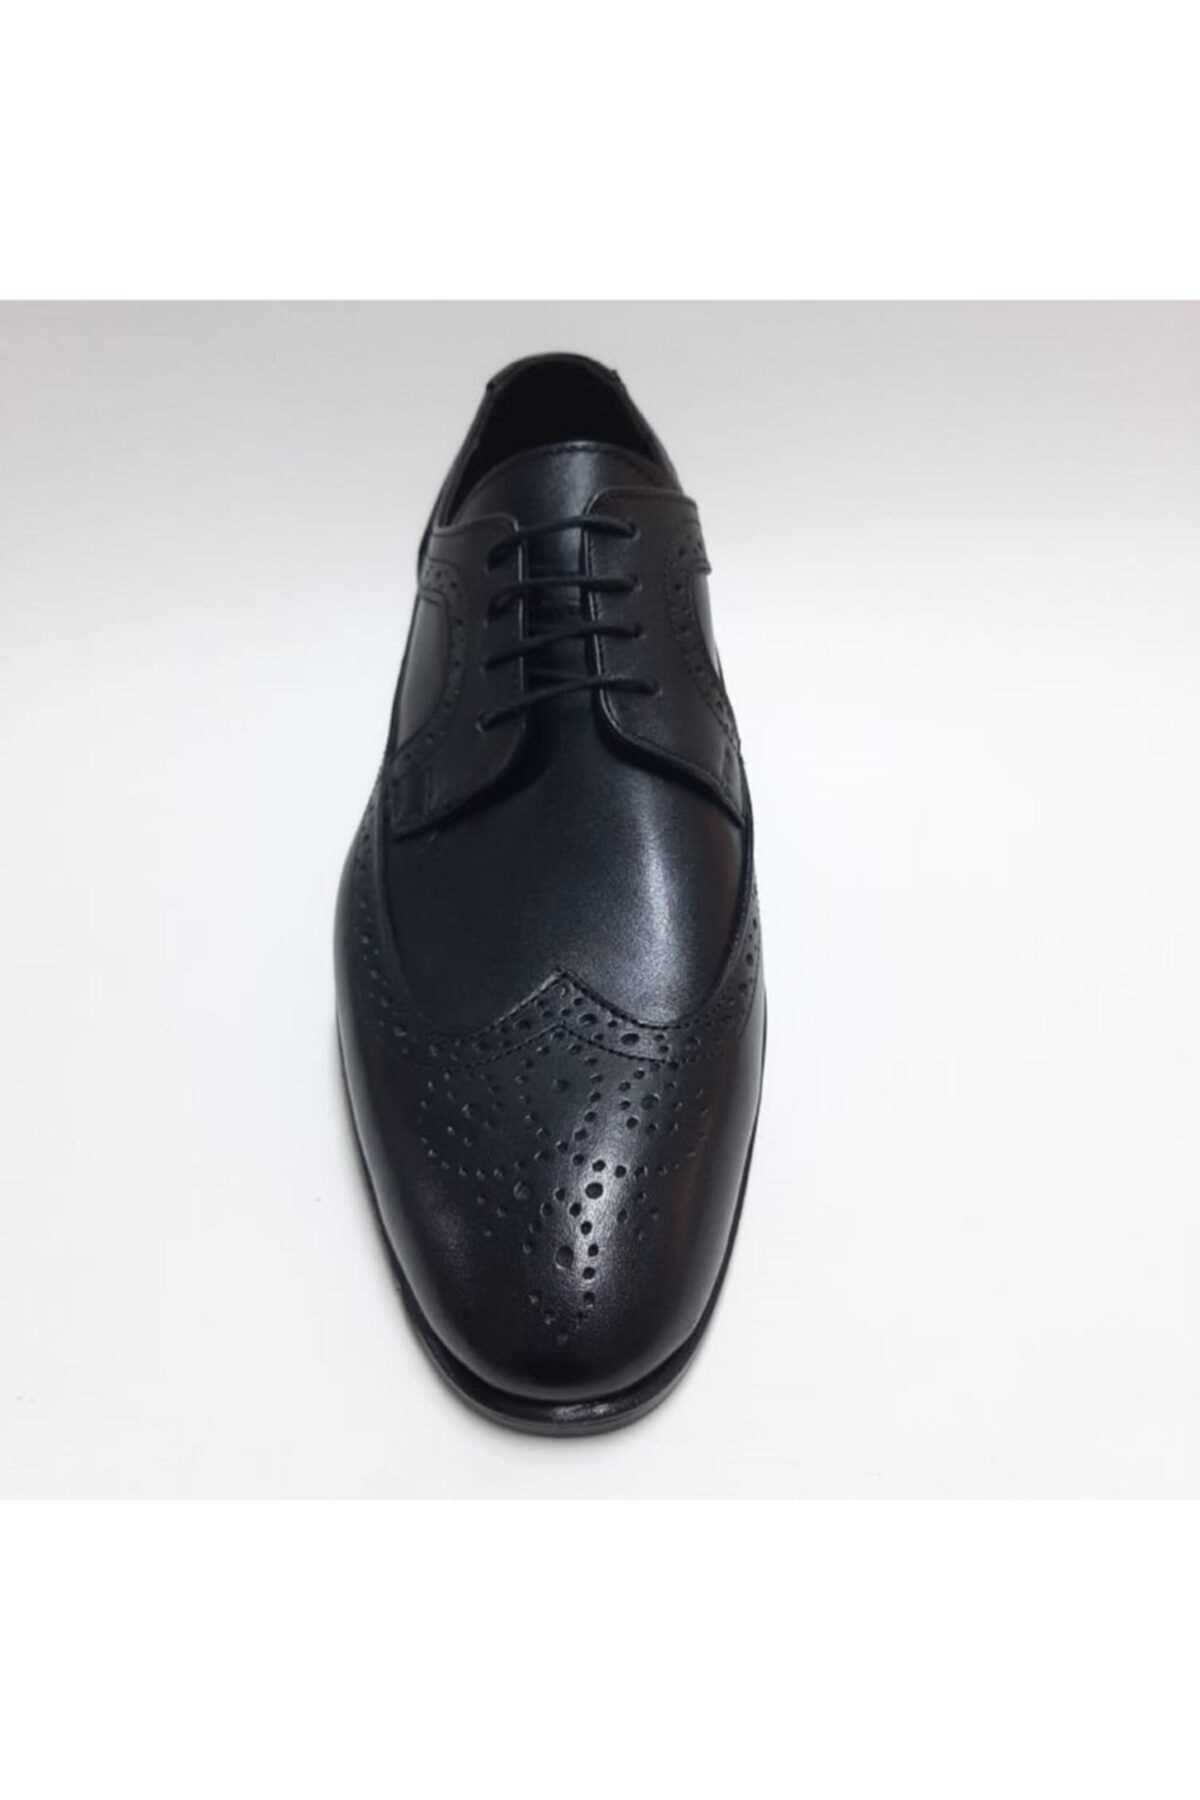 فروش نقدی کفش کلاسیک مردانه خاص برند Antioch رنگ مشکی کد ty102752474